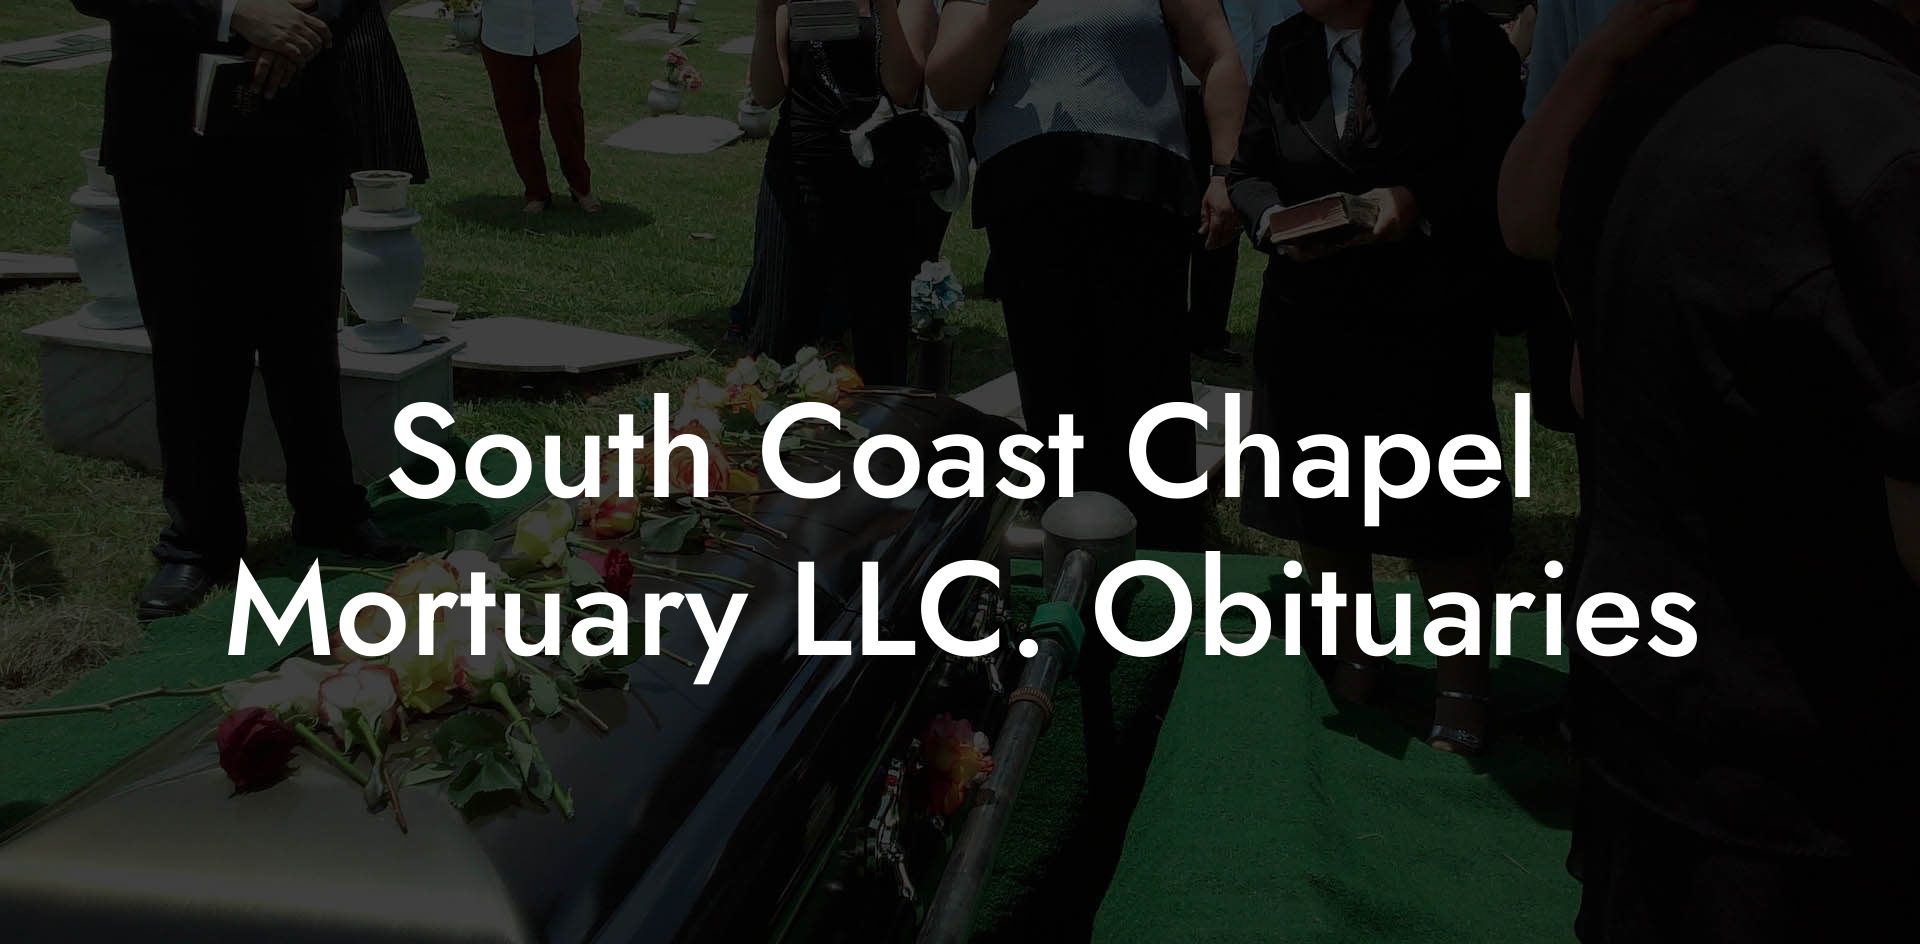 South Coast Chapel Mortuary LLC. Obituaries